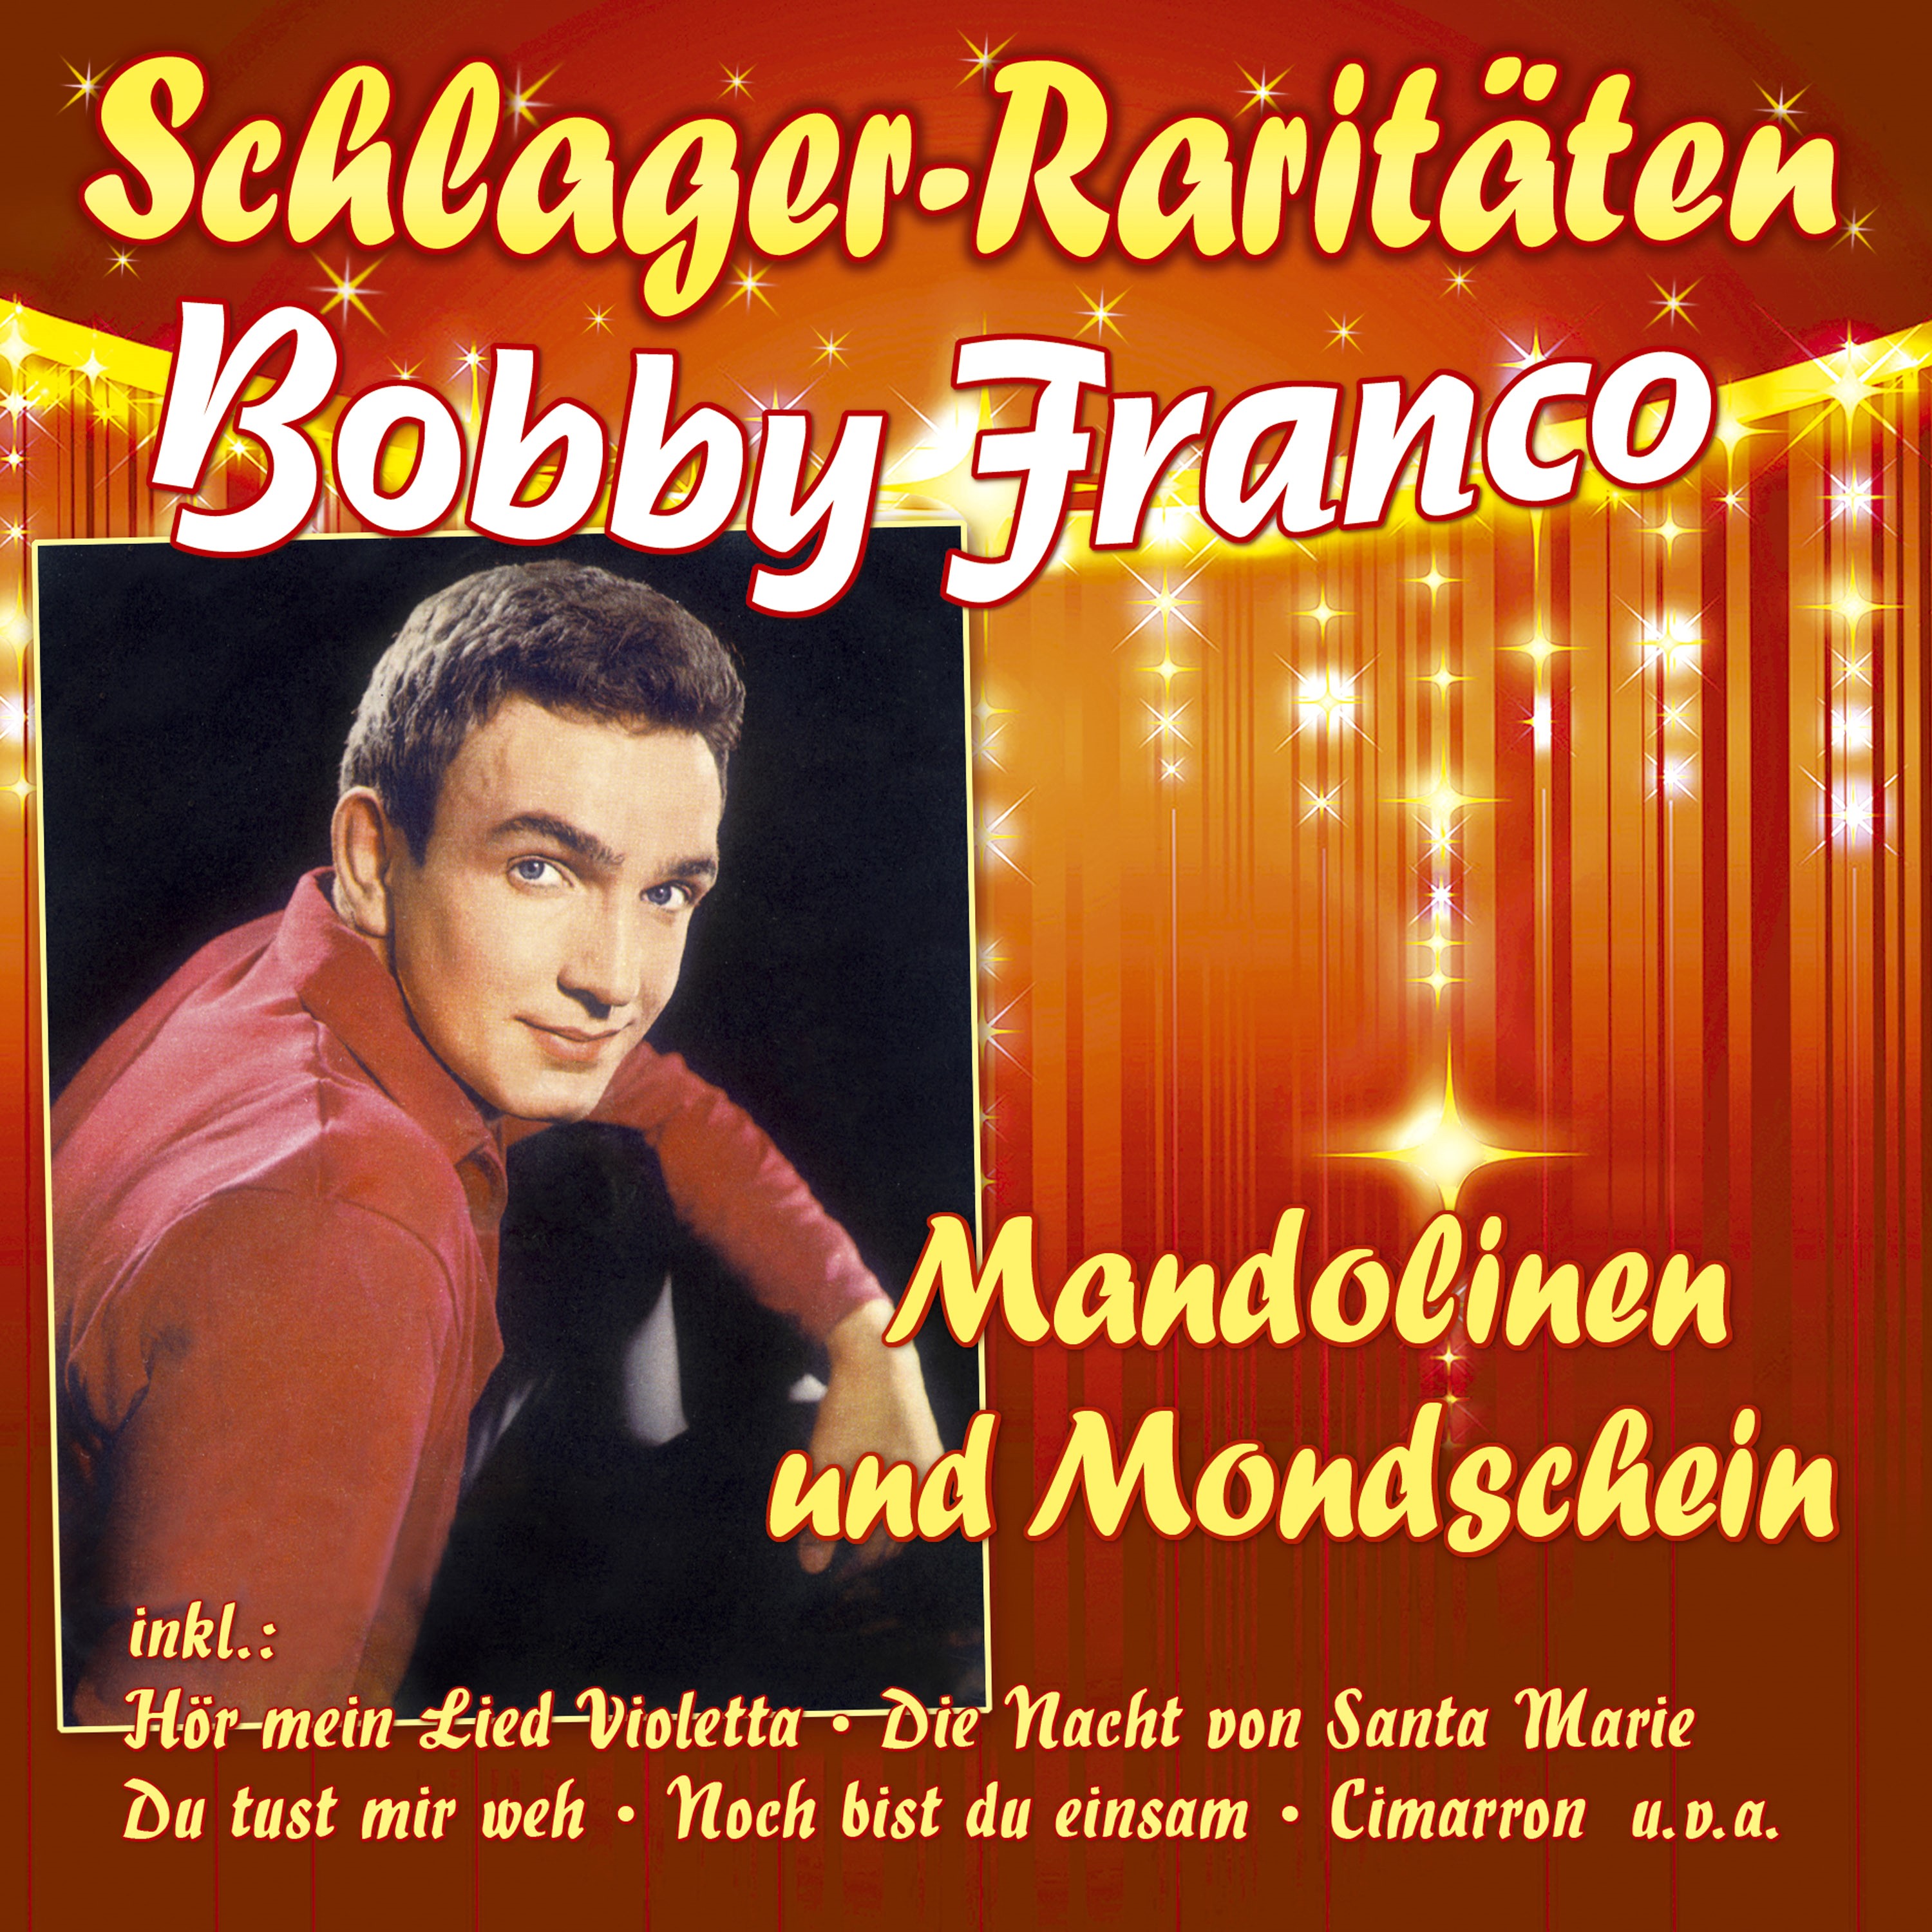 Franco, Bobby - Mandolinen und Mondschein (Schlager-Raritäten)